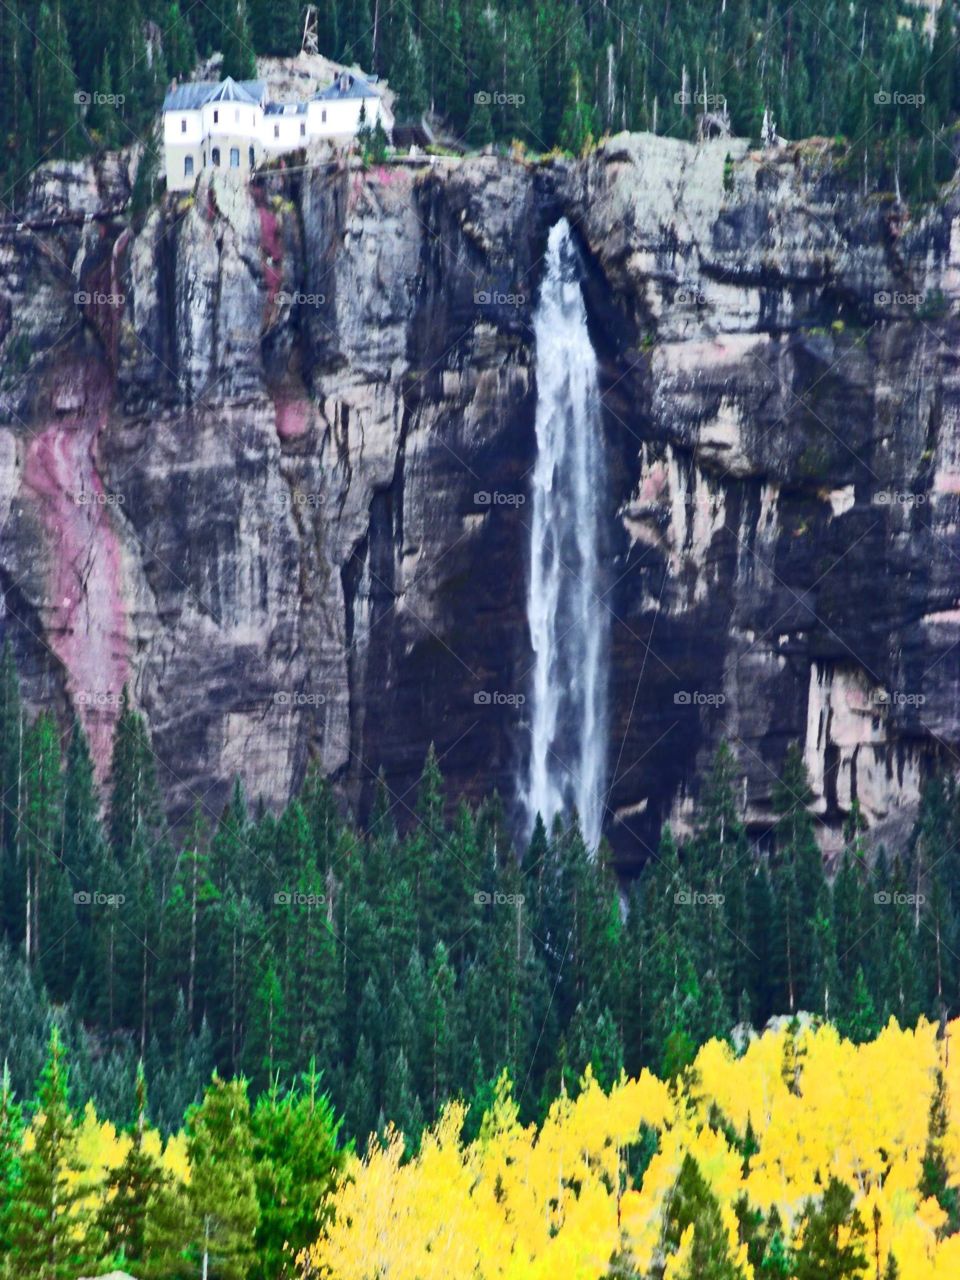 Beautiful Bridal Veil Falls  neat Telluride, Co